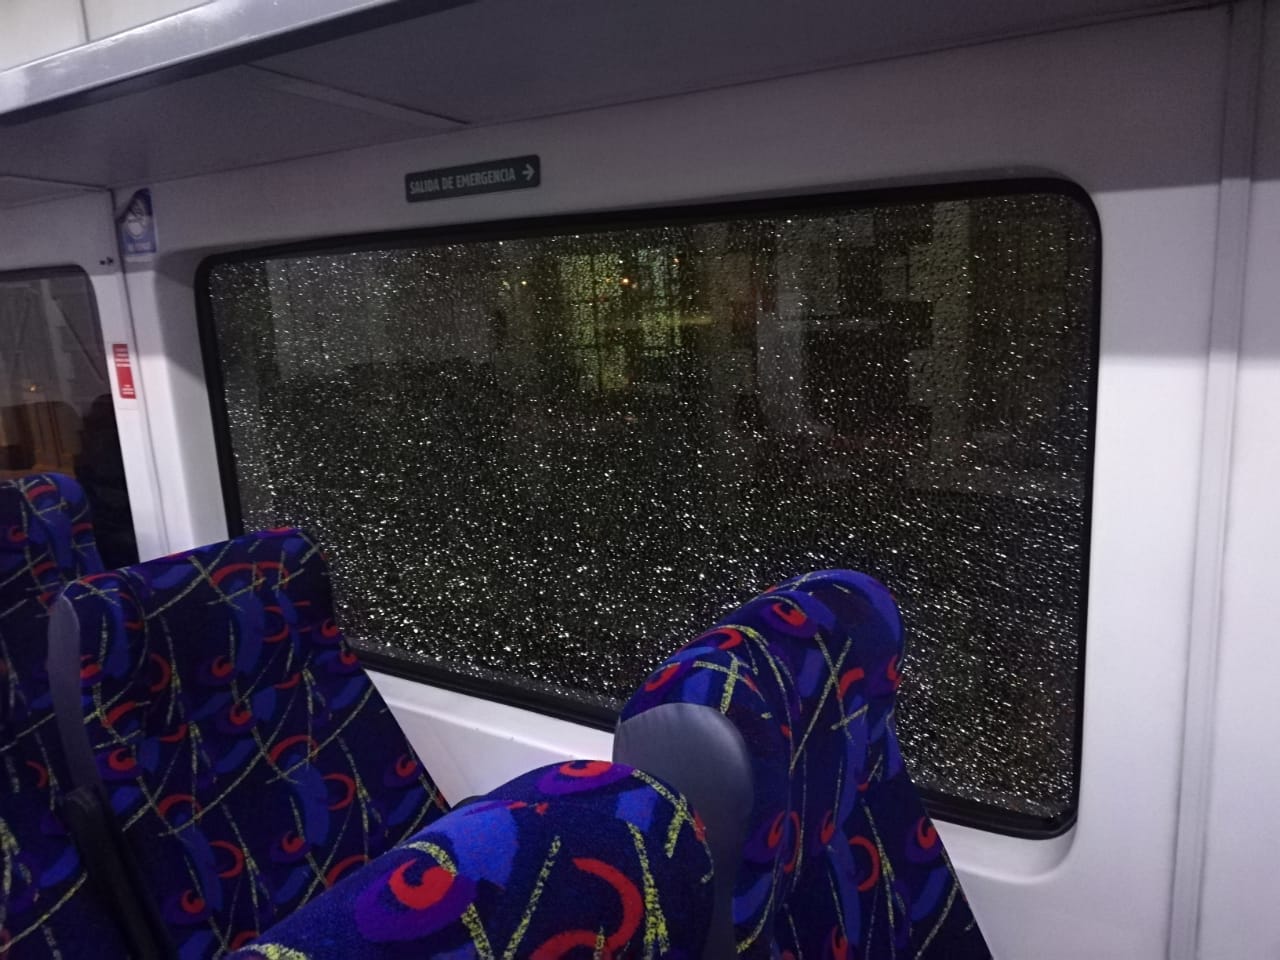 Dos vidrios del tren terminaron rotos por los piedrazos. (Gentileza).-